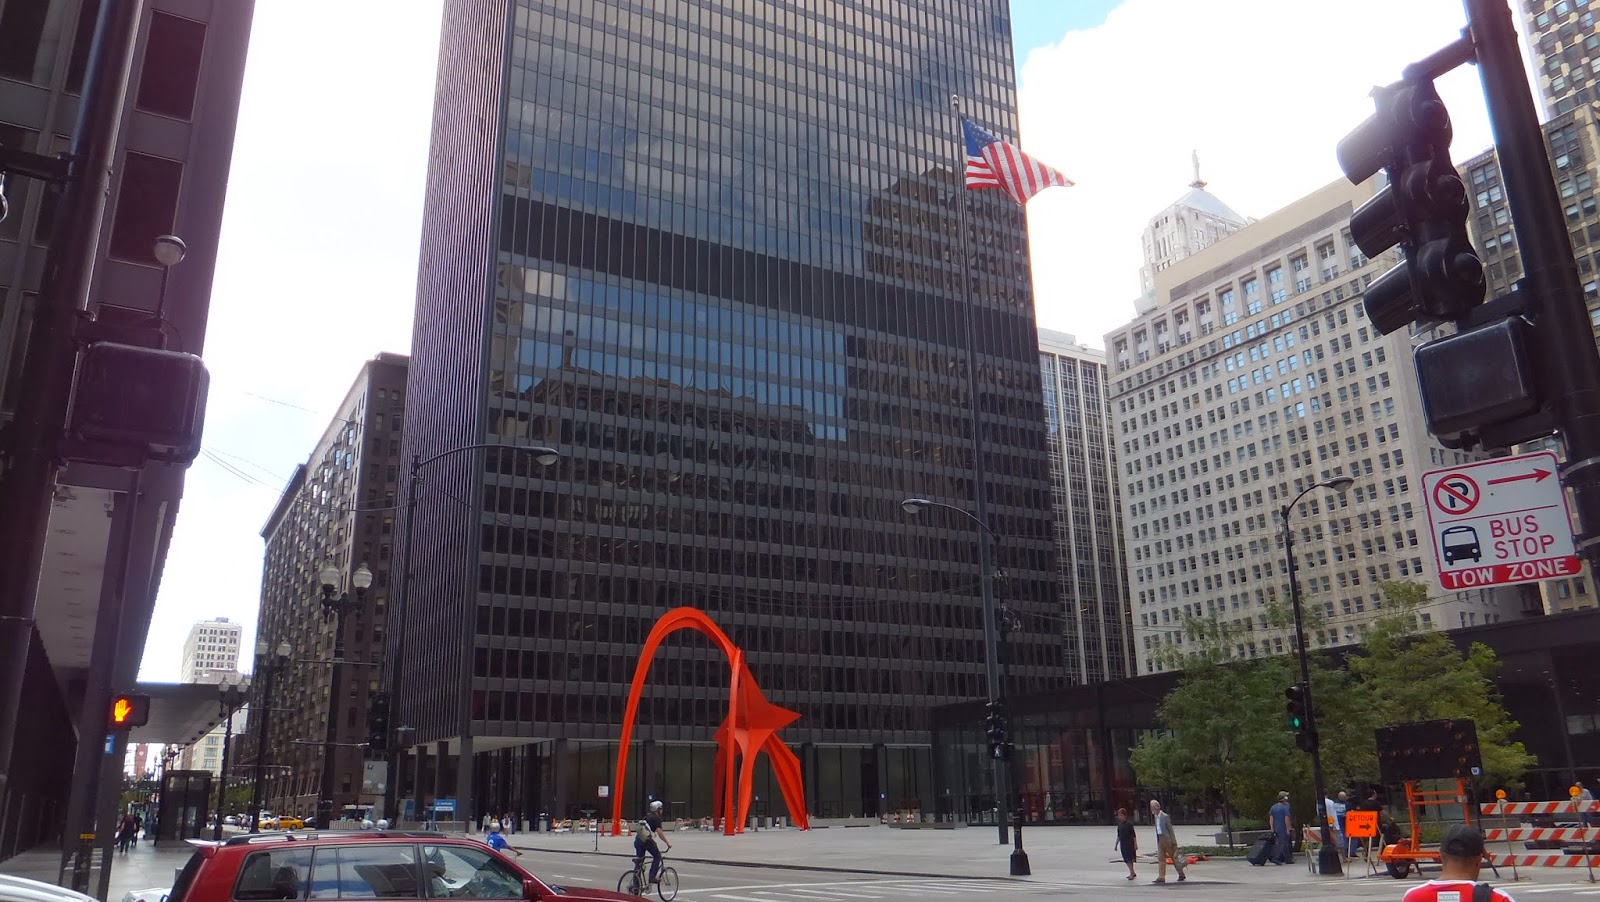 Alexander Calder, Chicago, Street Art, Elisa N, Blog de Viajes, Lifestyle, Travel